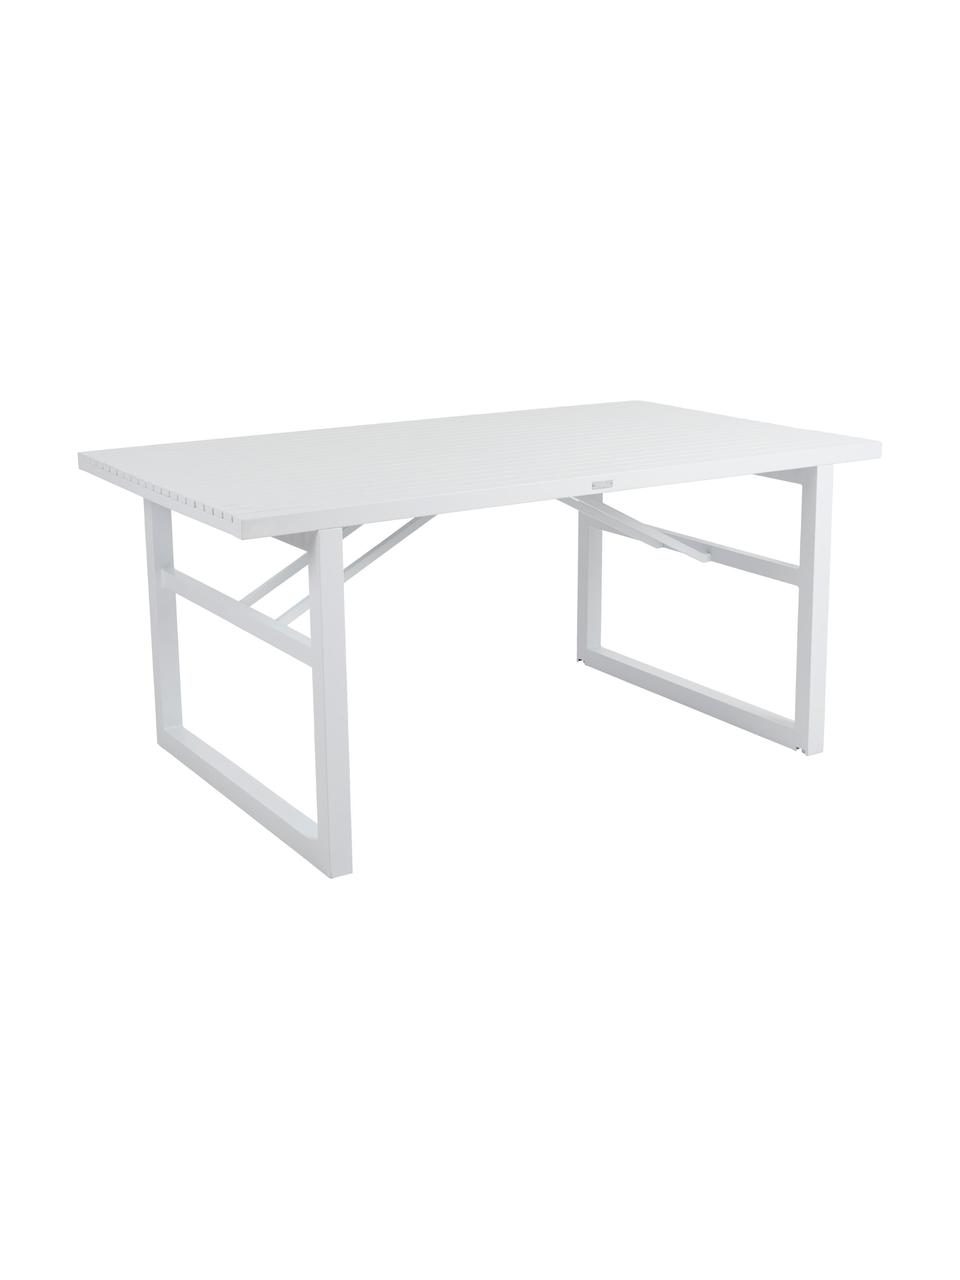 Stół ogrodowy Vevi, Aluminium malowane proszkowo, Biały, S 160 x G 90 cm